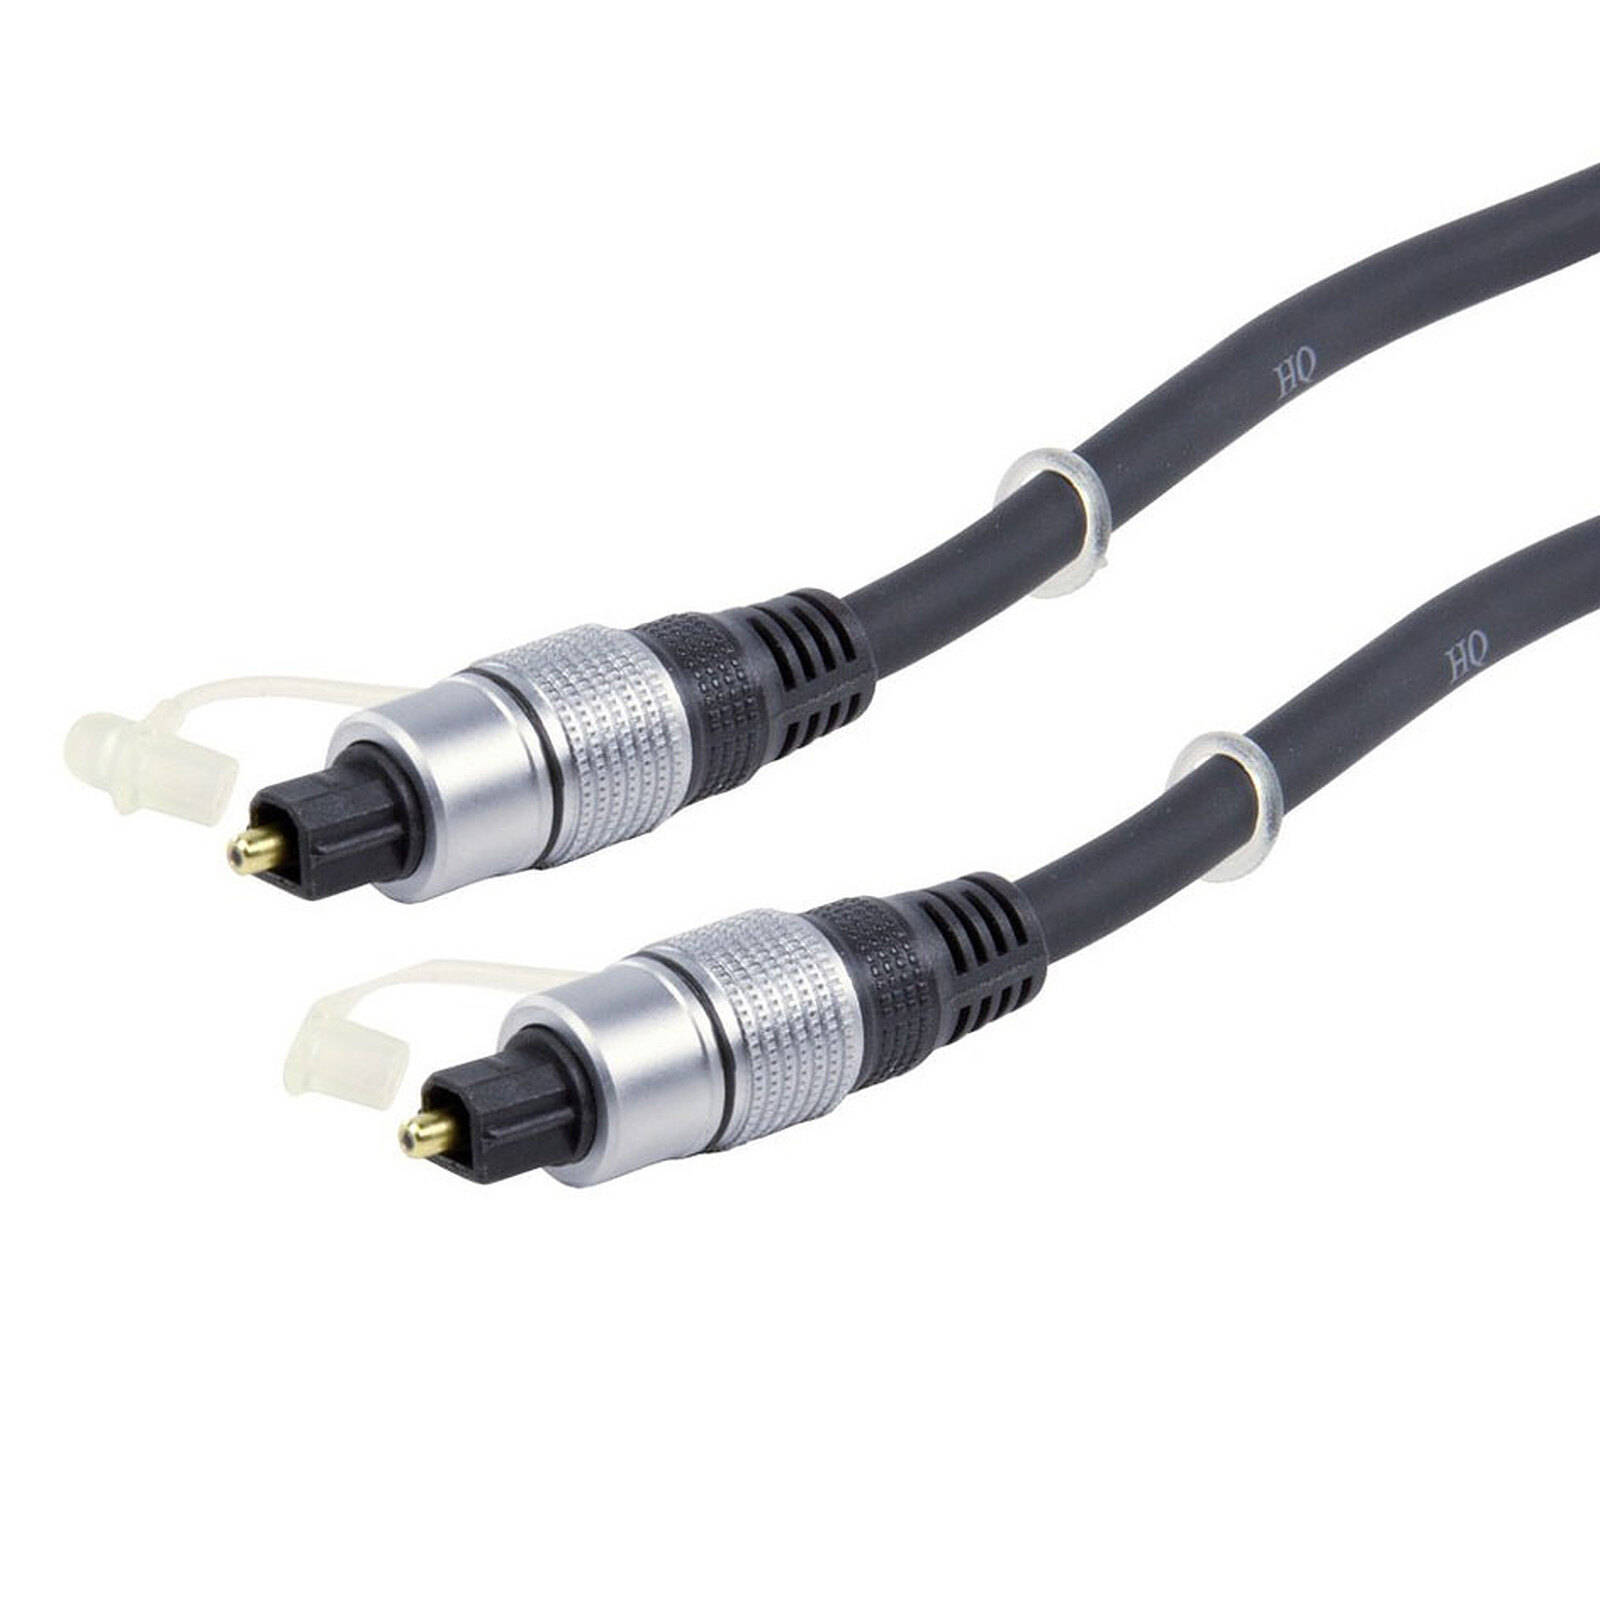 PRO Series TOSLINK vers TOSLINK, câble fibre optique pour home cinéma, PS4, XBOX KabelDirekt 3m câble audio numérique optique/câble TOSLINK 